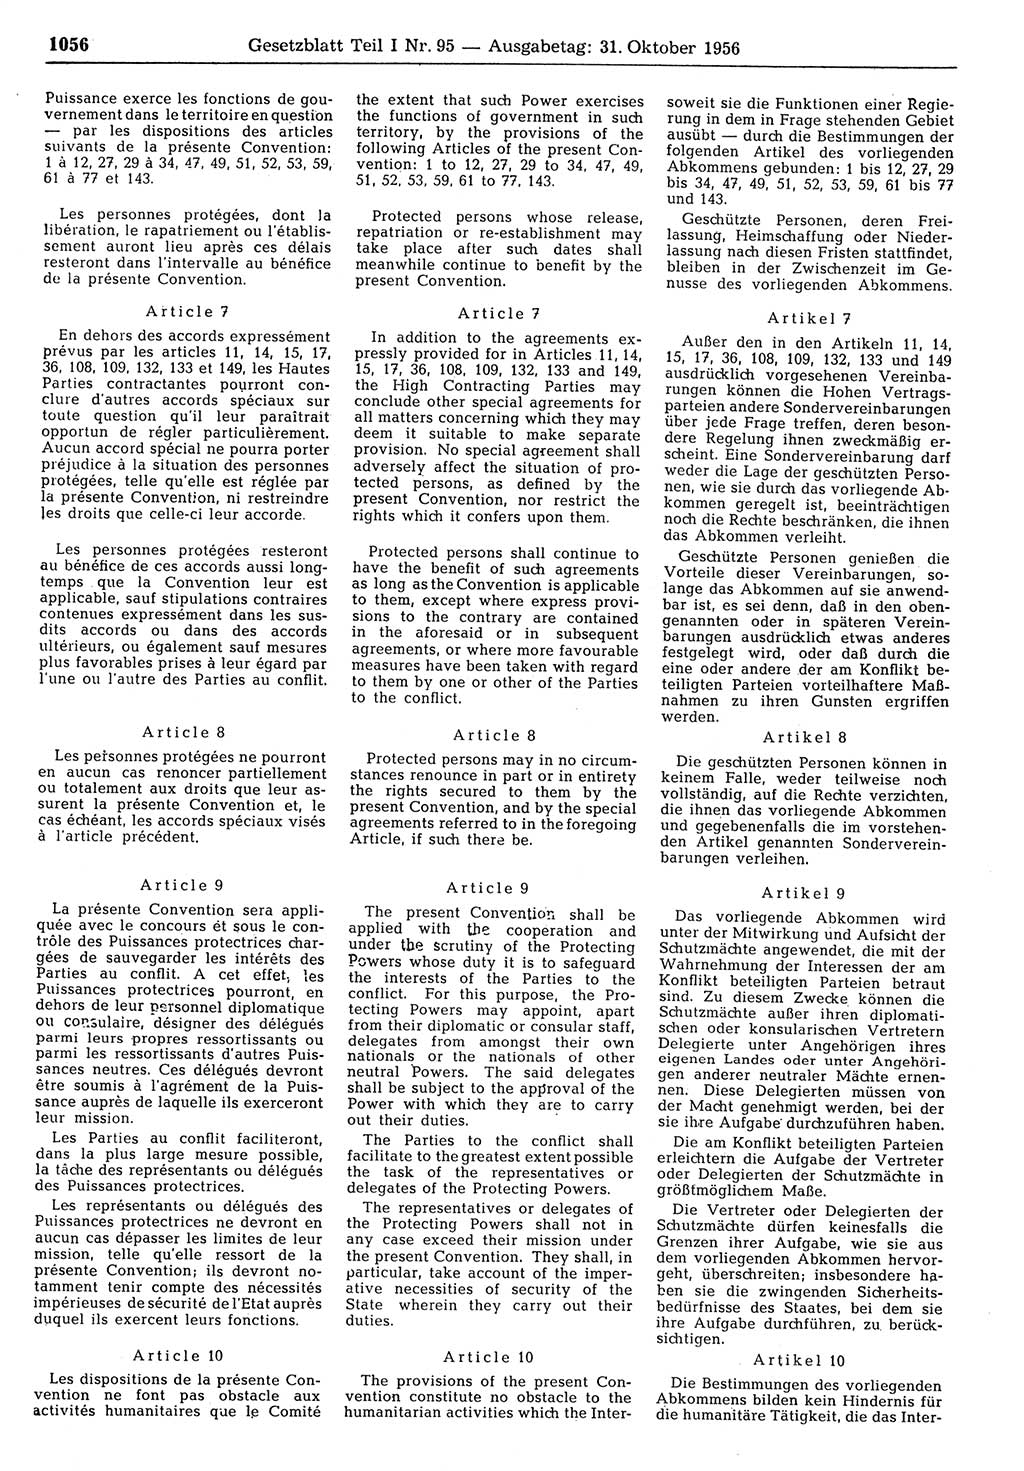 Gesetzblatt (GBl.) der Deutschen Demokratischen Republik (DDR) Teil Ⅰ 1956, Seite 1056 (GBl. DDR Ⅰ 1956, S. 1056)